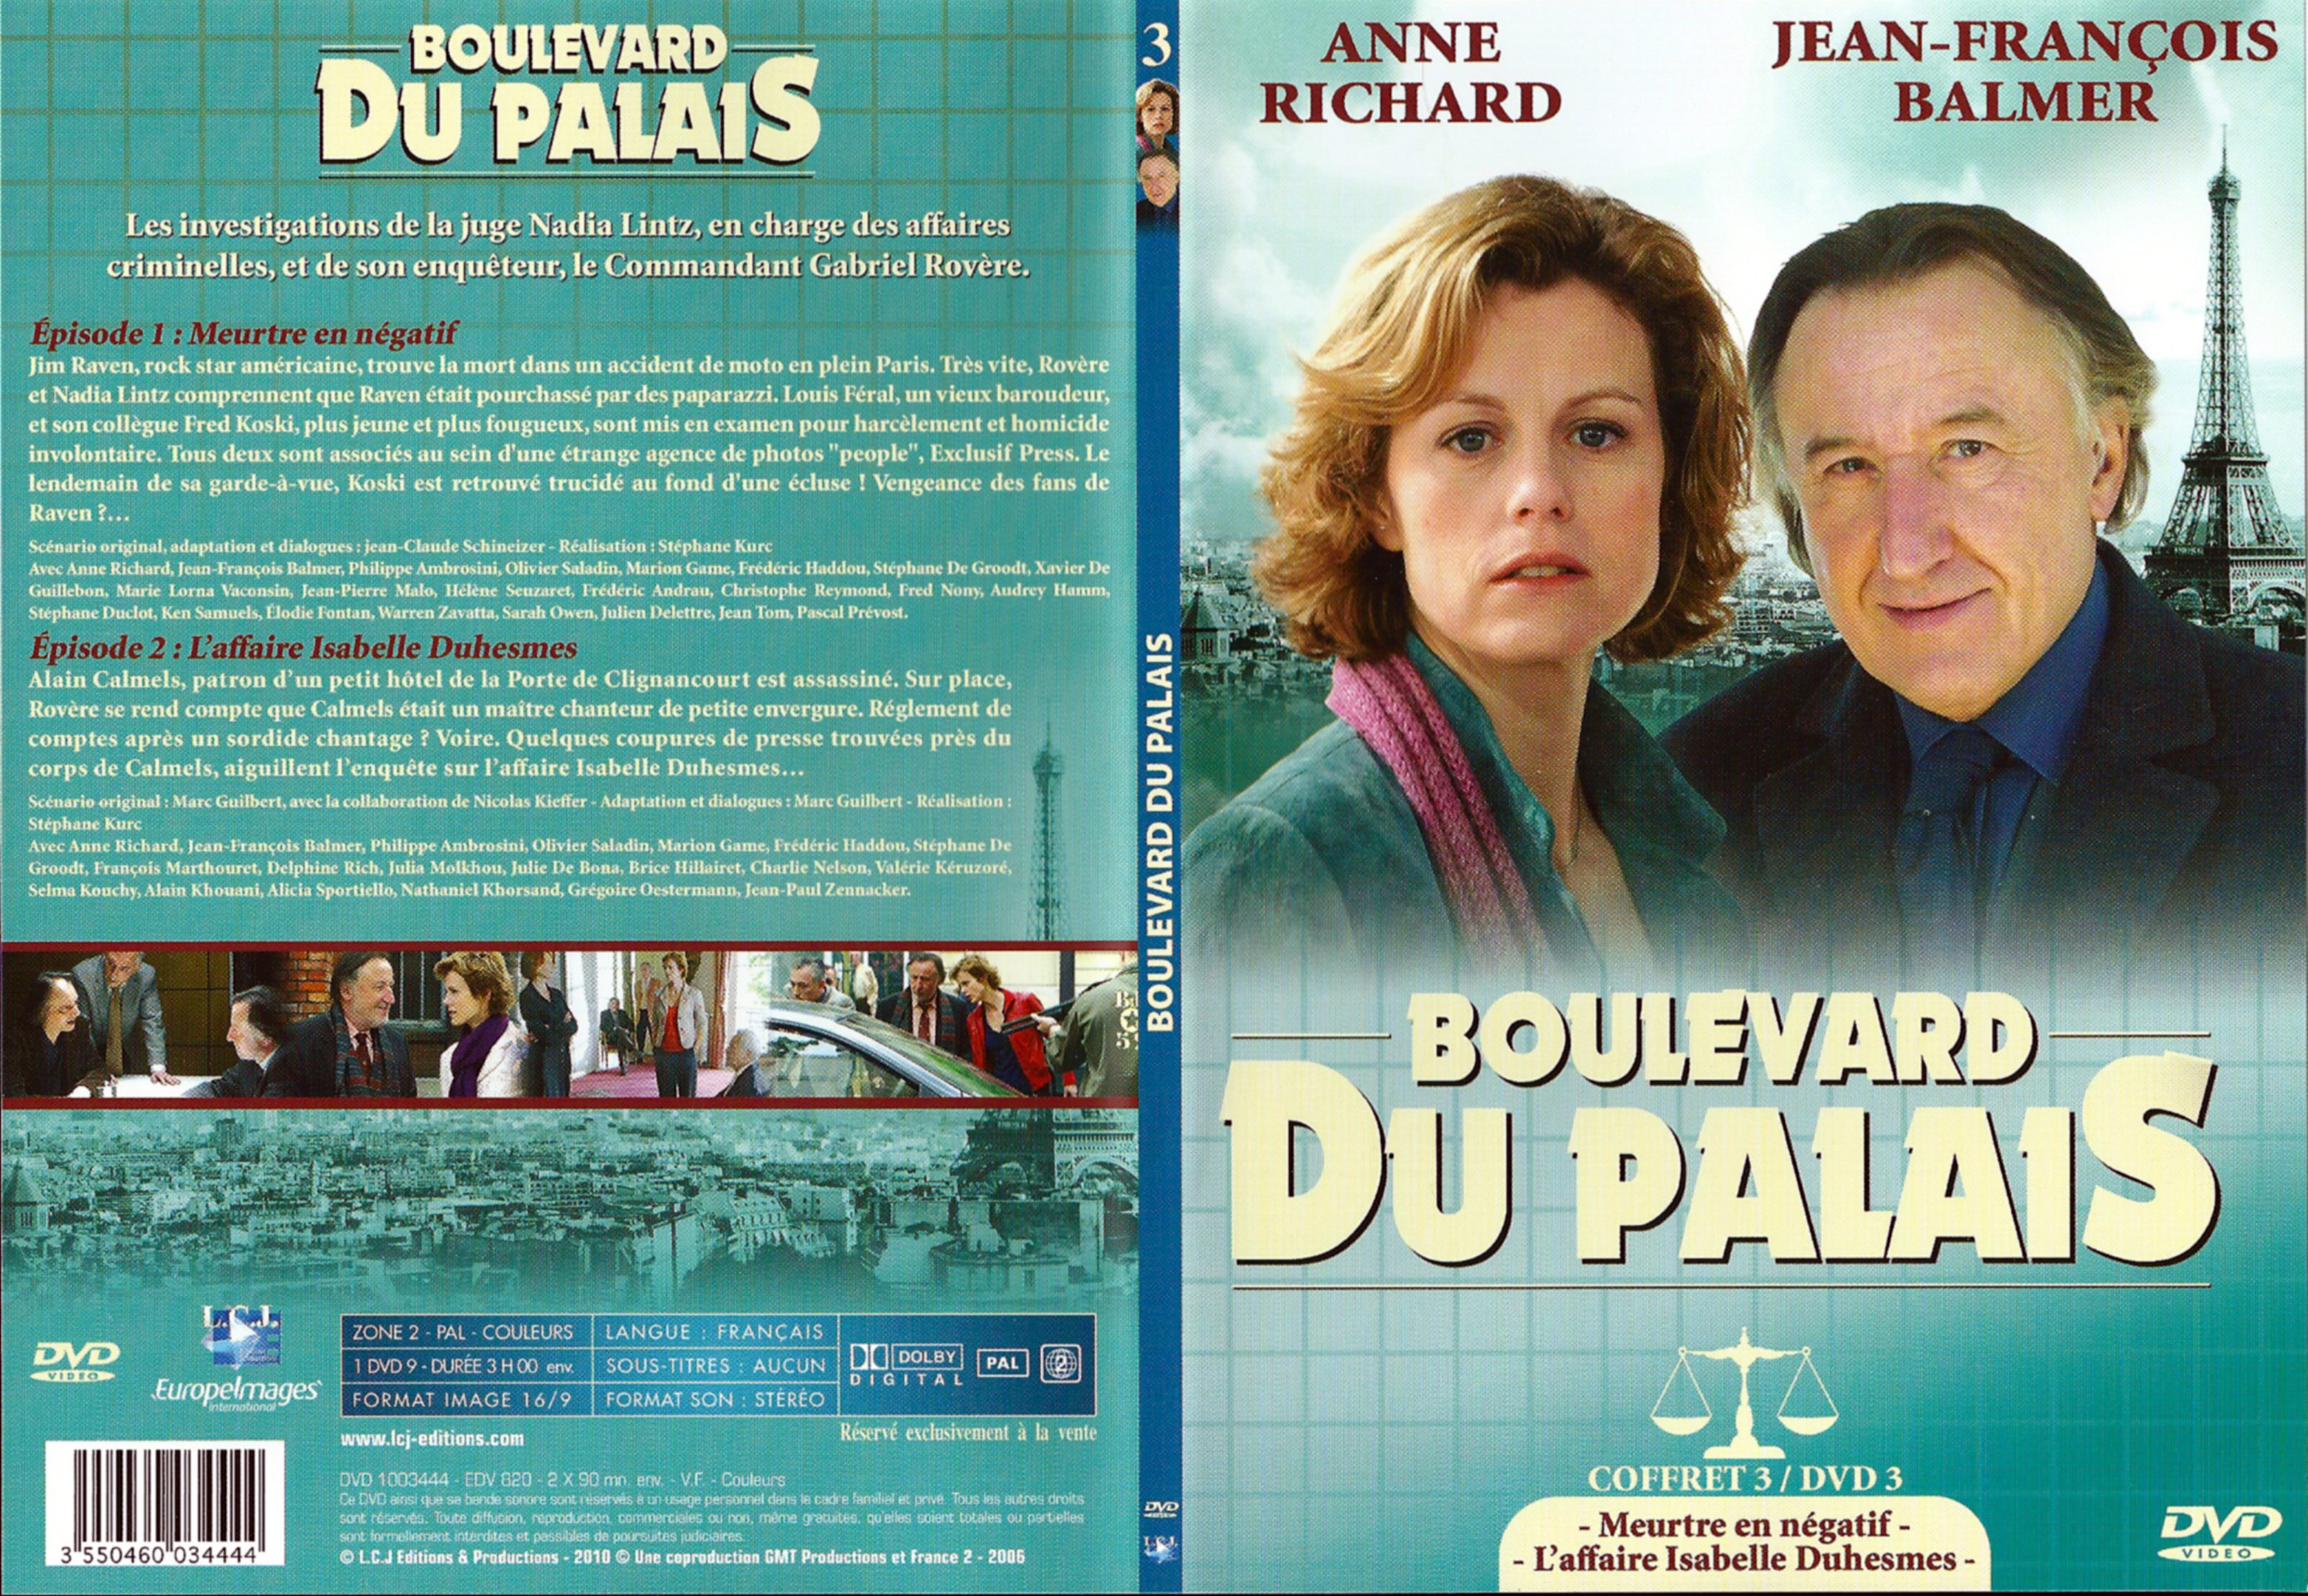 Jaquette DVD Boulevard du palais Saison 3 DVD 3